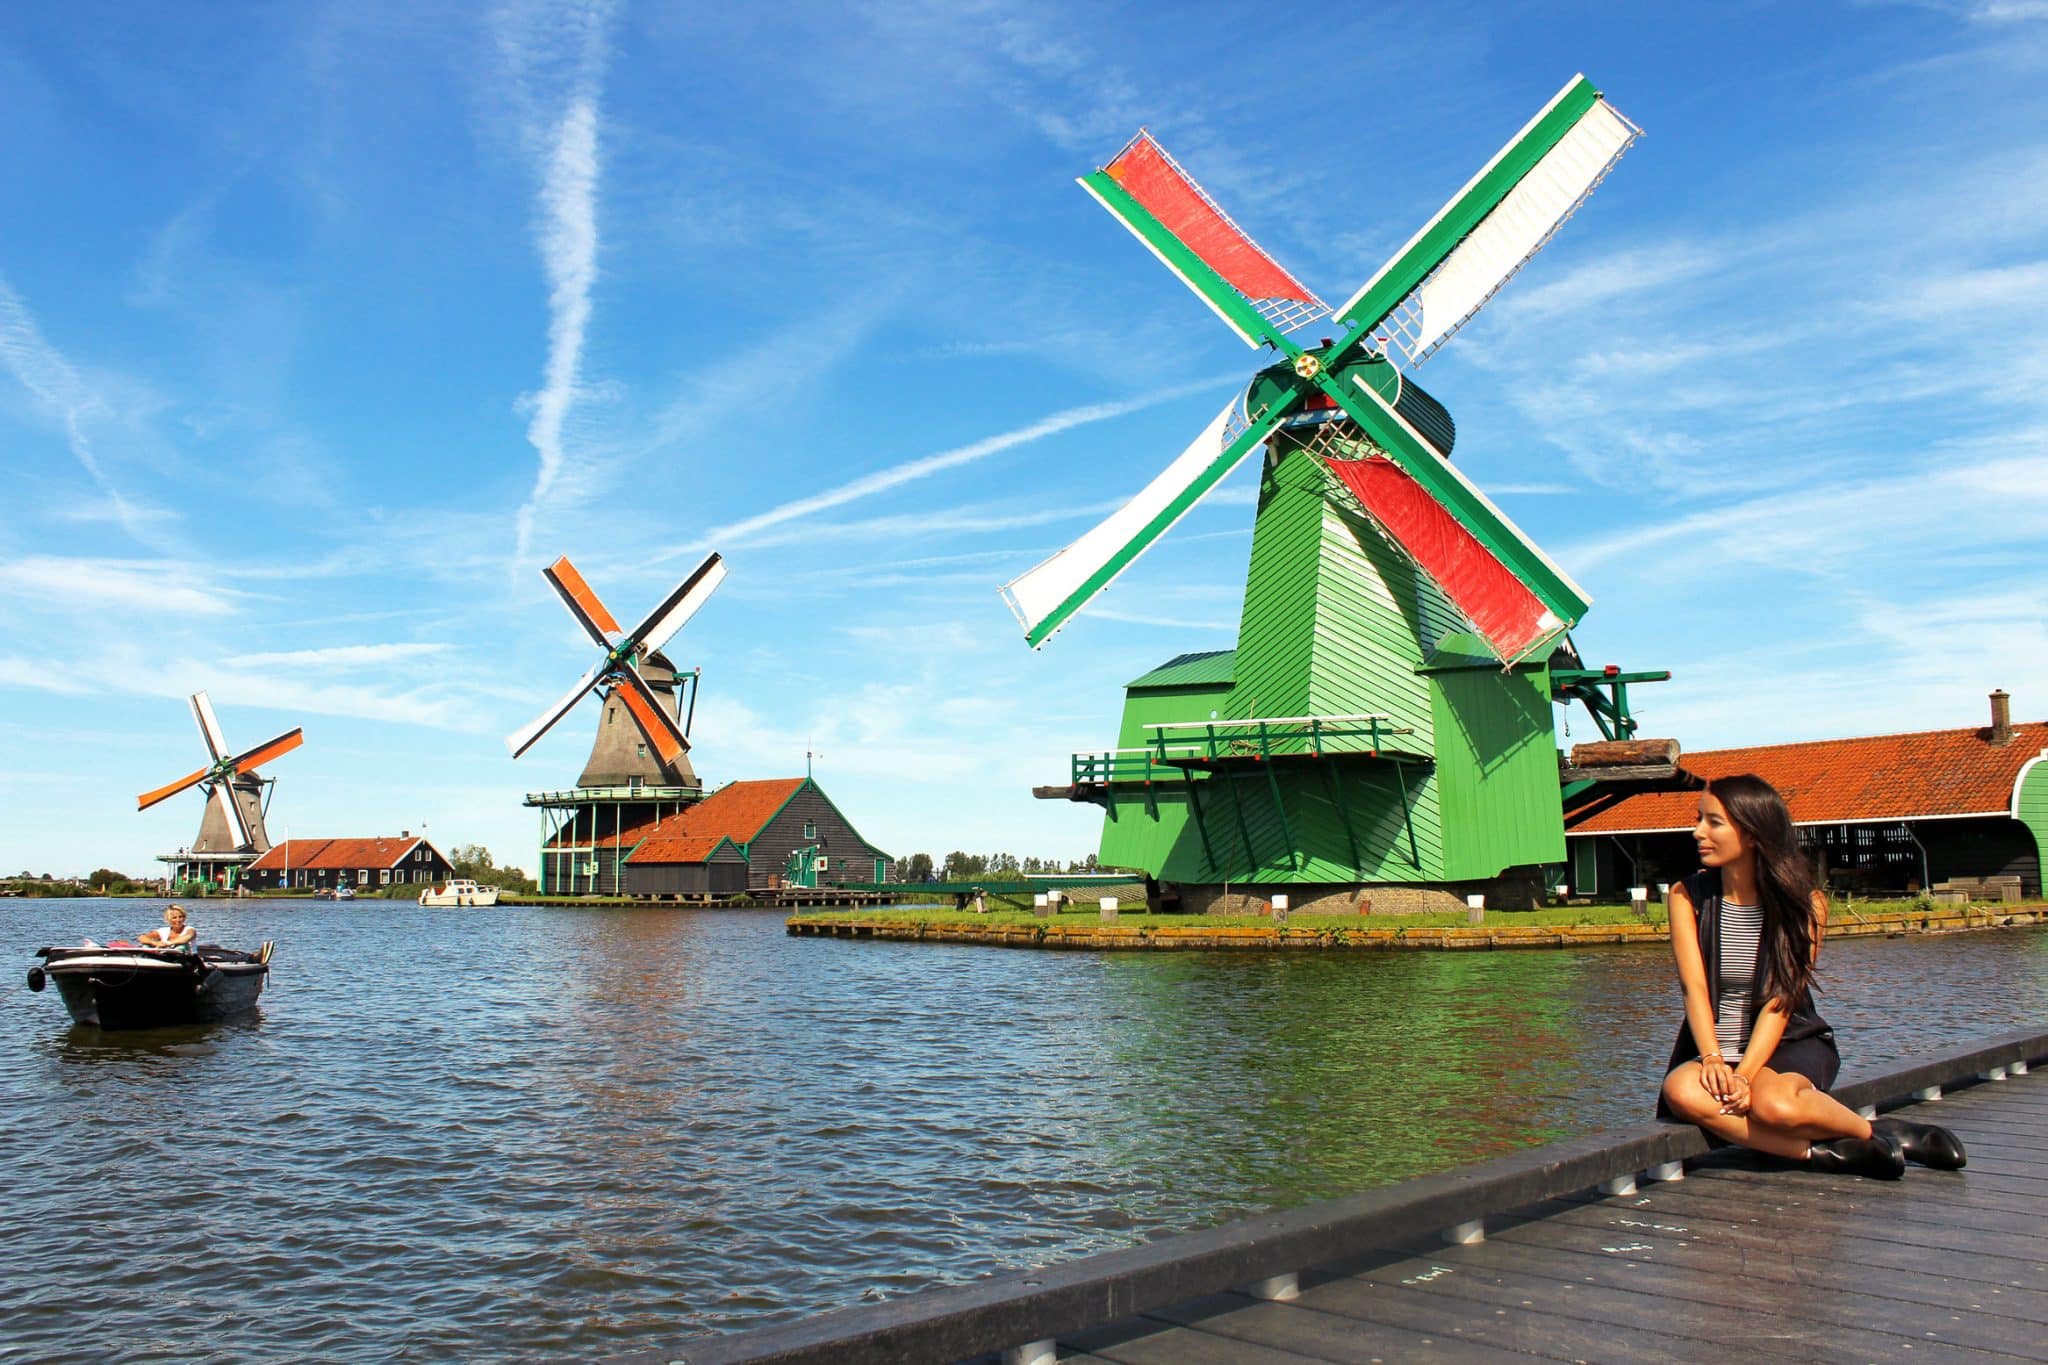 Zaanse Schans Windmills DayTrip from Amsterdam G+T